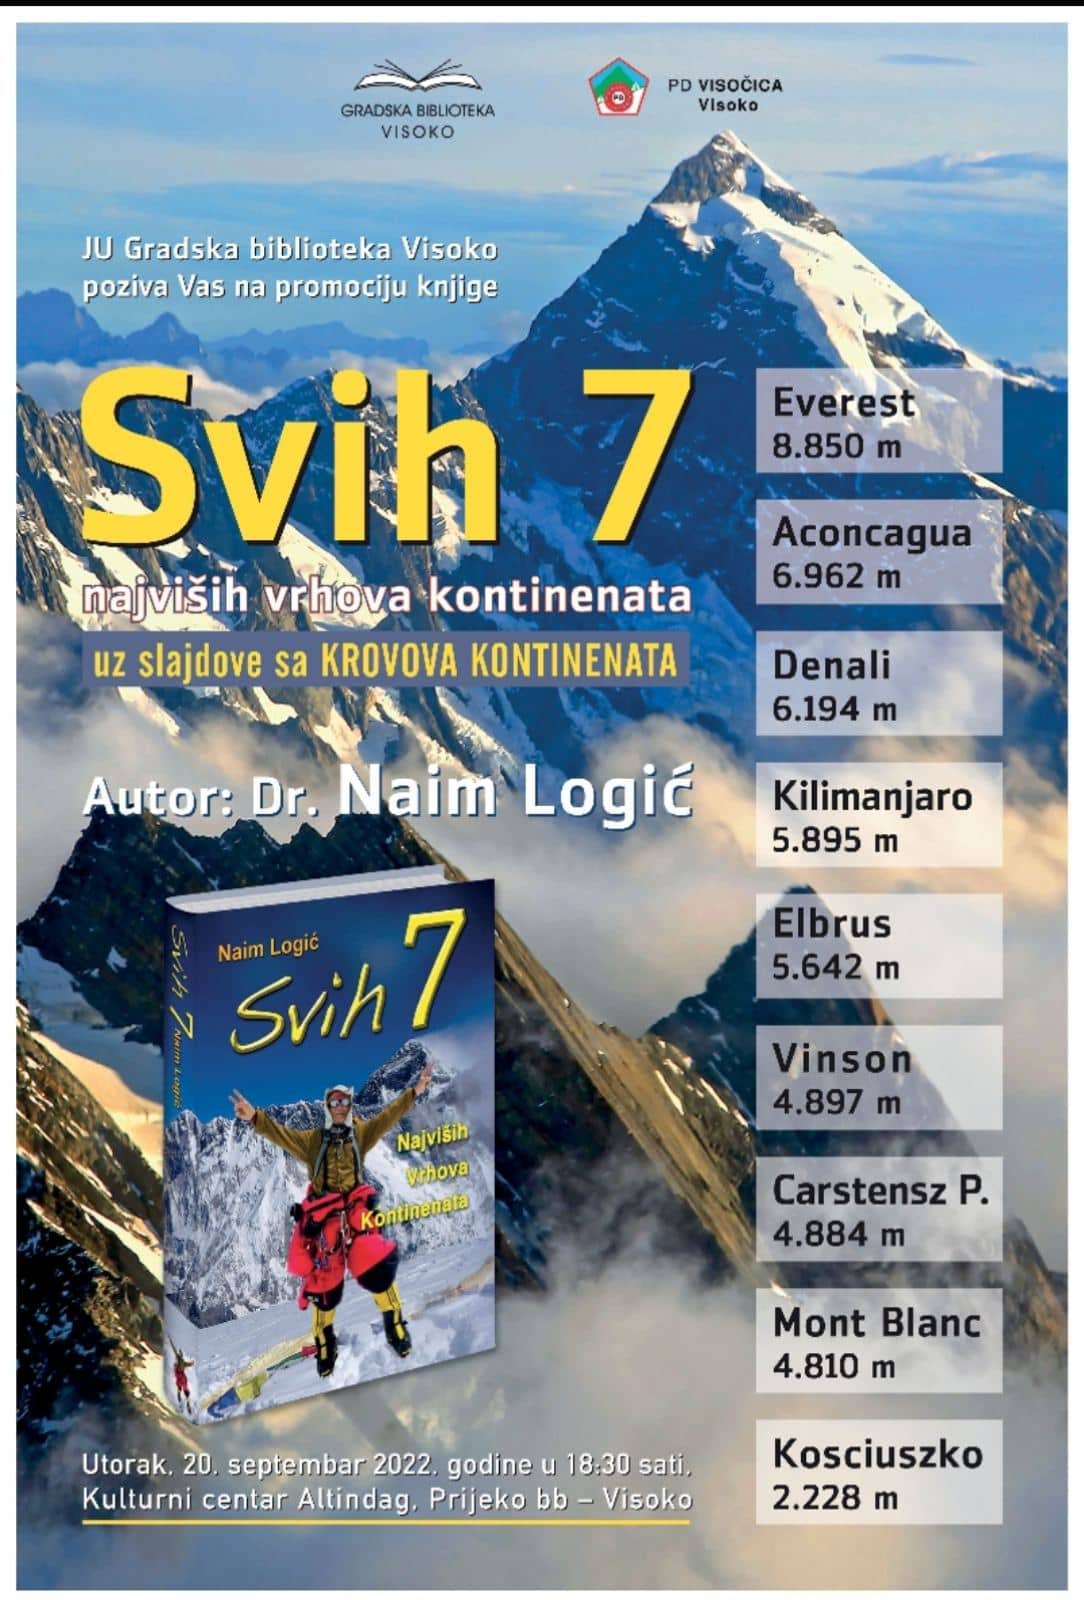 Promocija knjige “Svih 7 najviših vrhova kontinenata” u Visokom